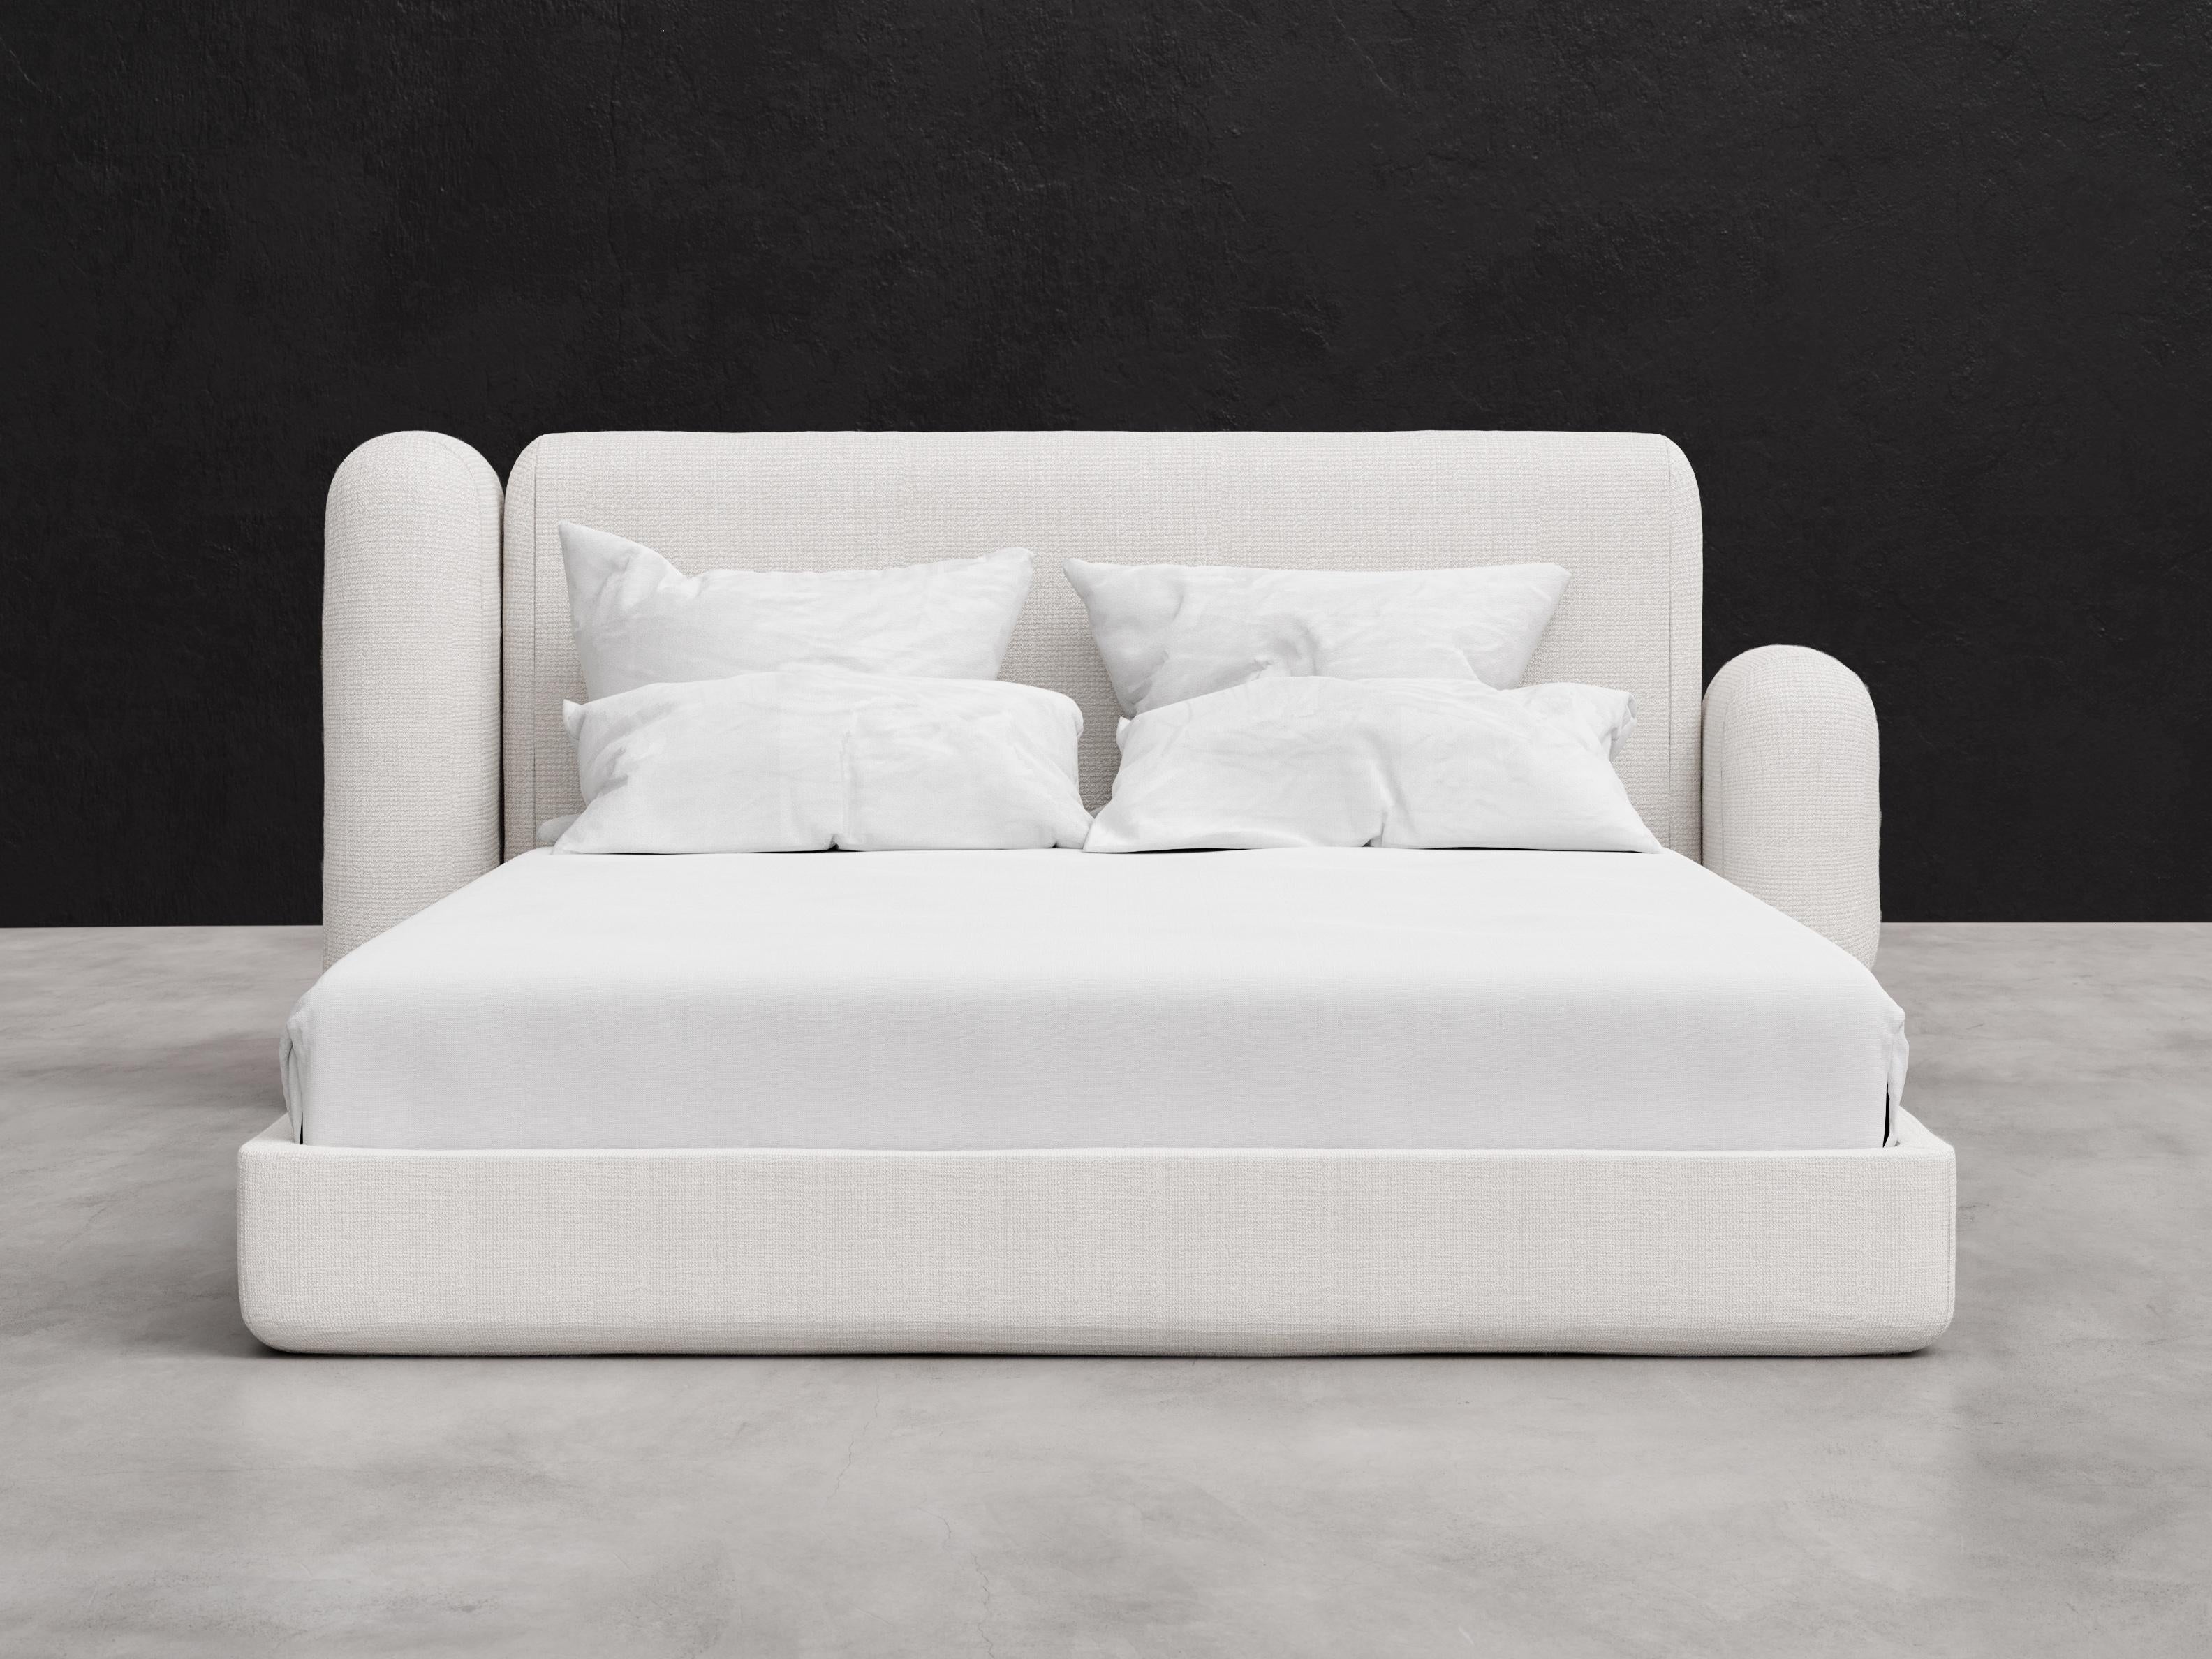 ASYM BED - Modernes asymmetrisches Bett aus Curly Lamb Boucle in Soft White

Wir stellen das Asym Bett in Queen Size vor, ein atemberaubendes Möbelstück, das Ihrem Schlafzimmer Eleganz und Raffinesse verleiht. Mit seinen asymmetrischen